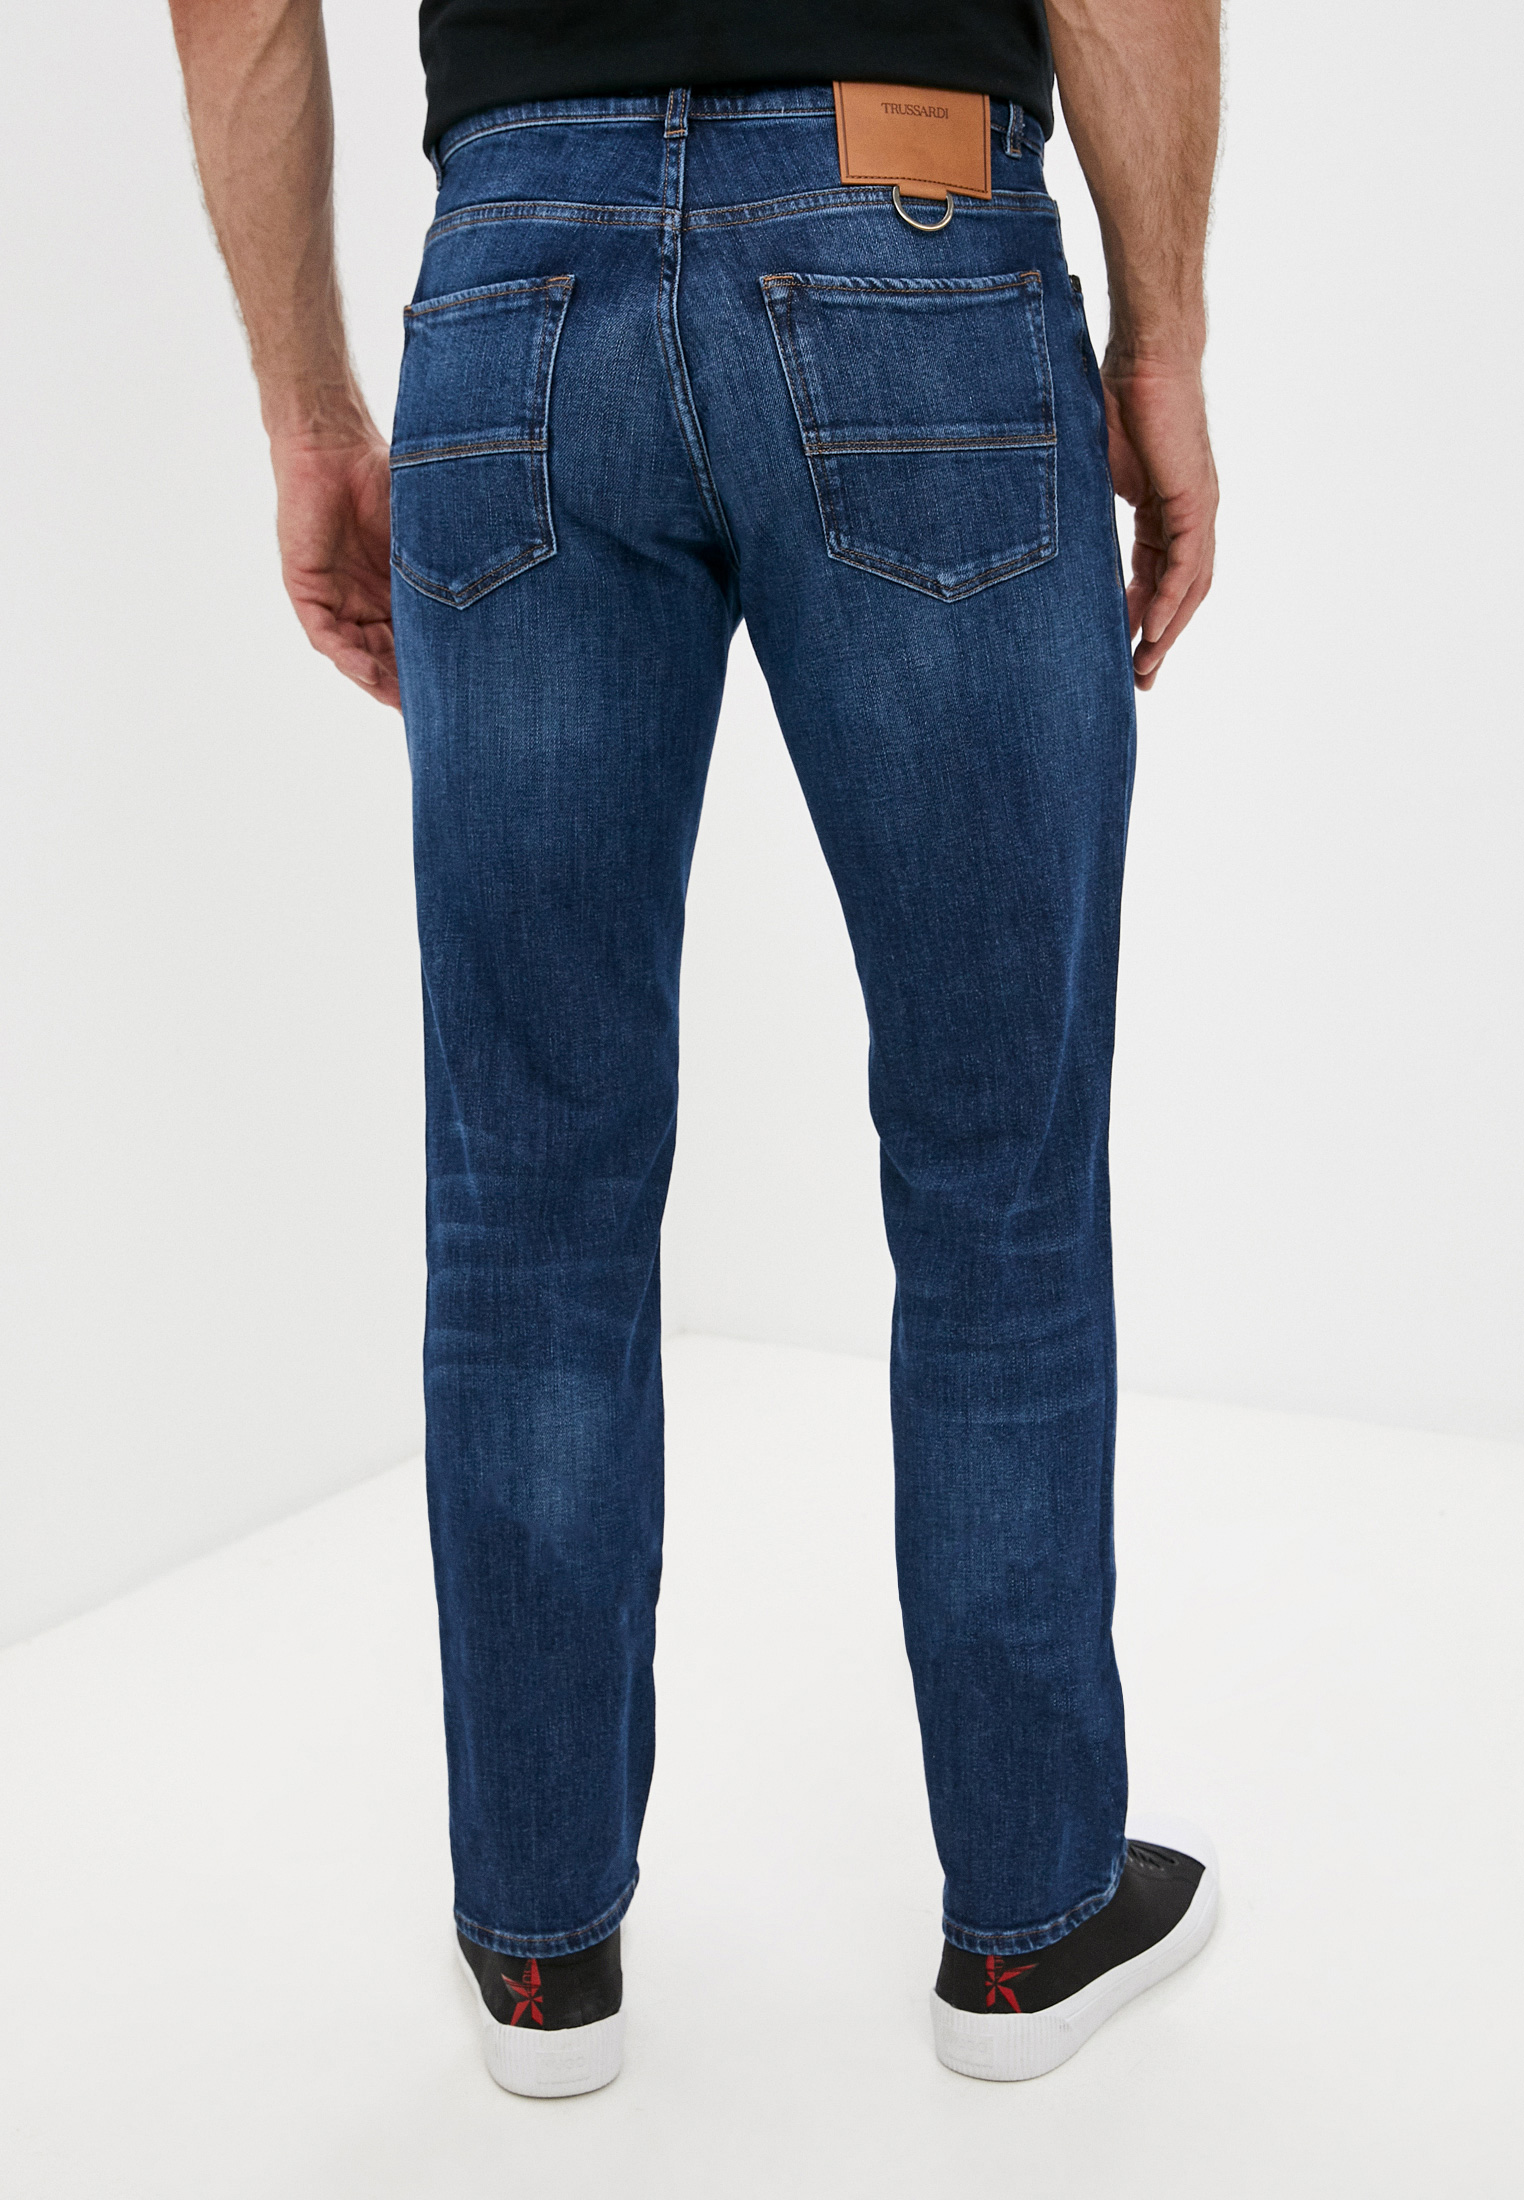 Мужские прямые джинсы Trussardi (Труссарди) 52J00001-1T005108: изображение 4